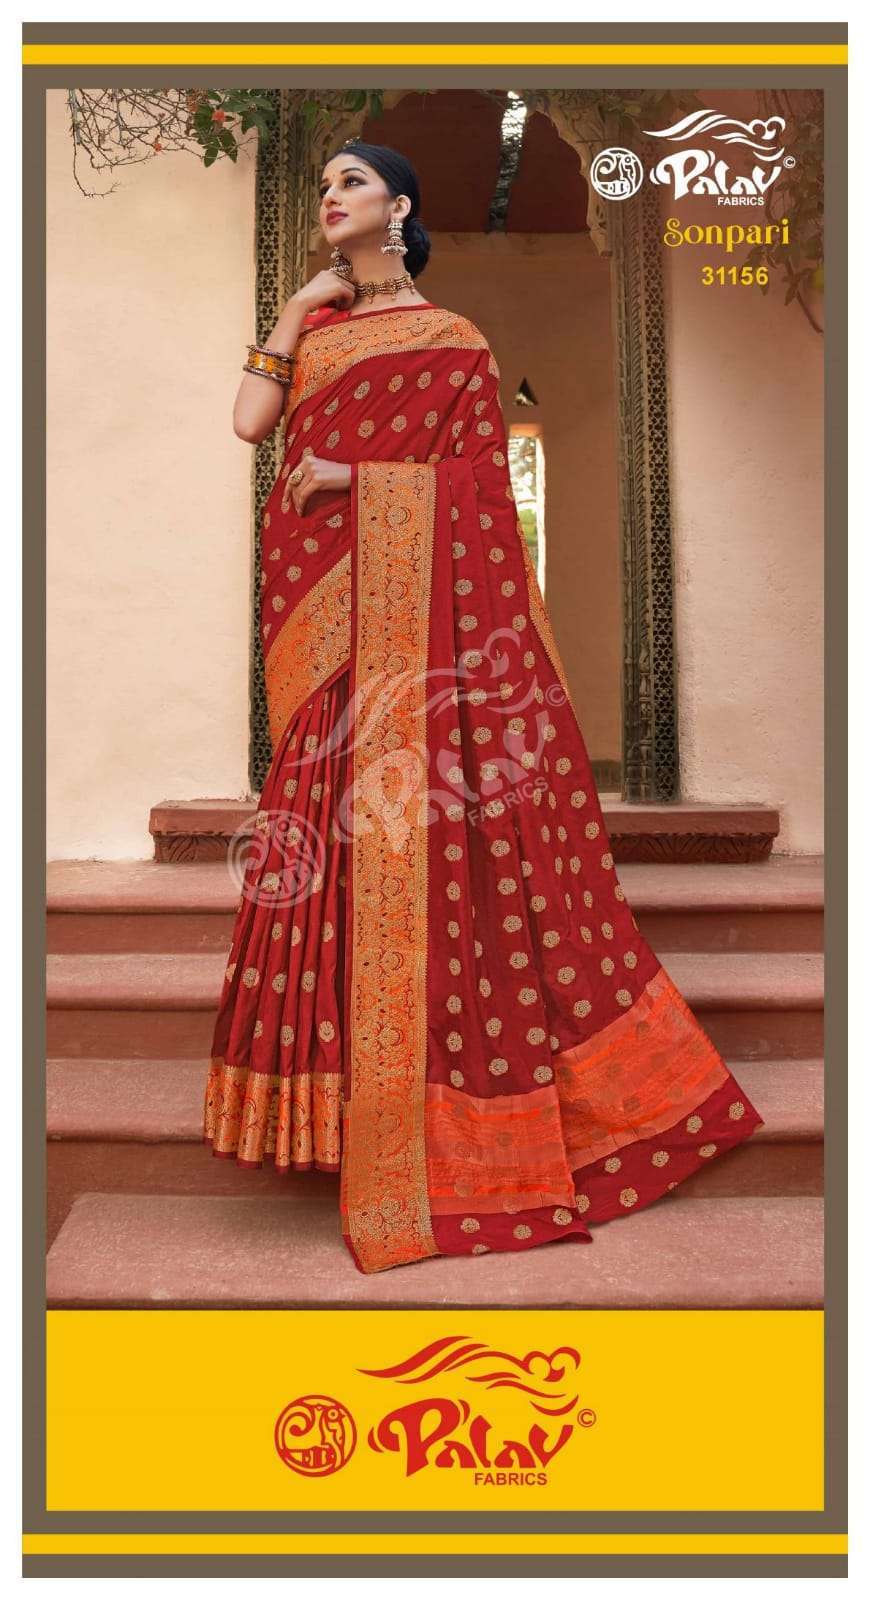 Palav Fabrics Sonpari Silk Traditional Sarees Collection 02